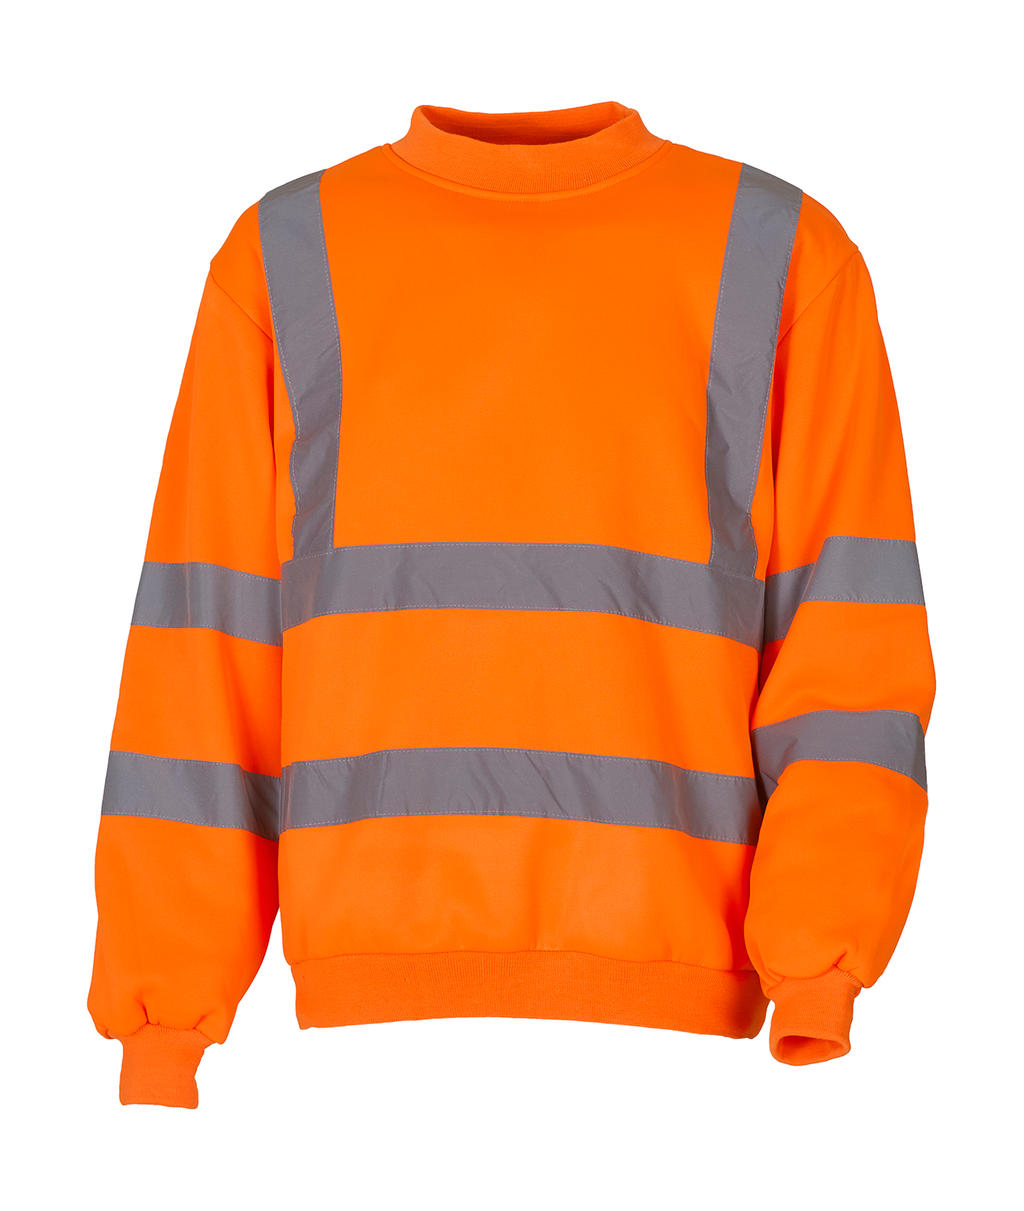  Fluo Sweatshirt in Farbe Fluo Orange